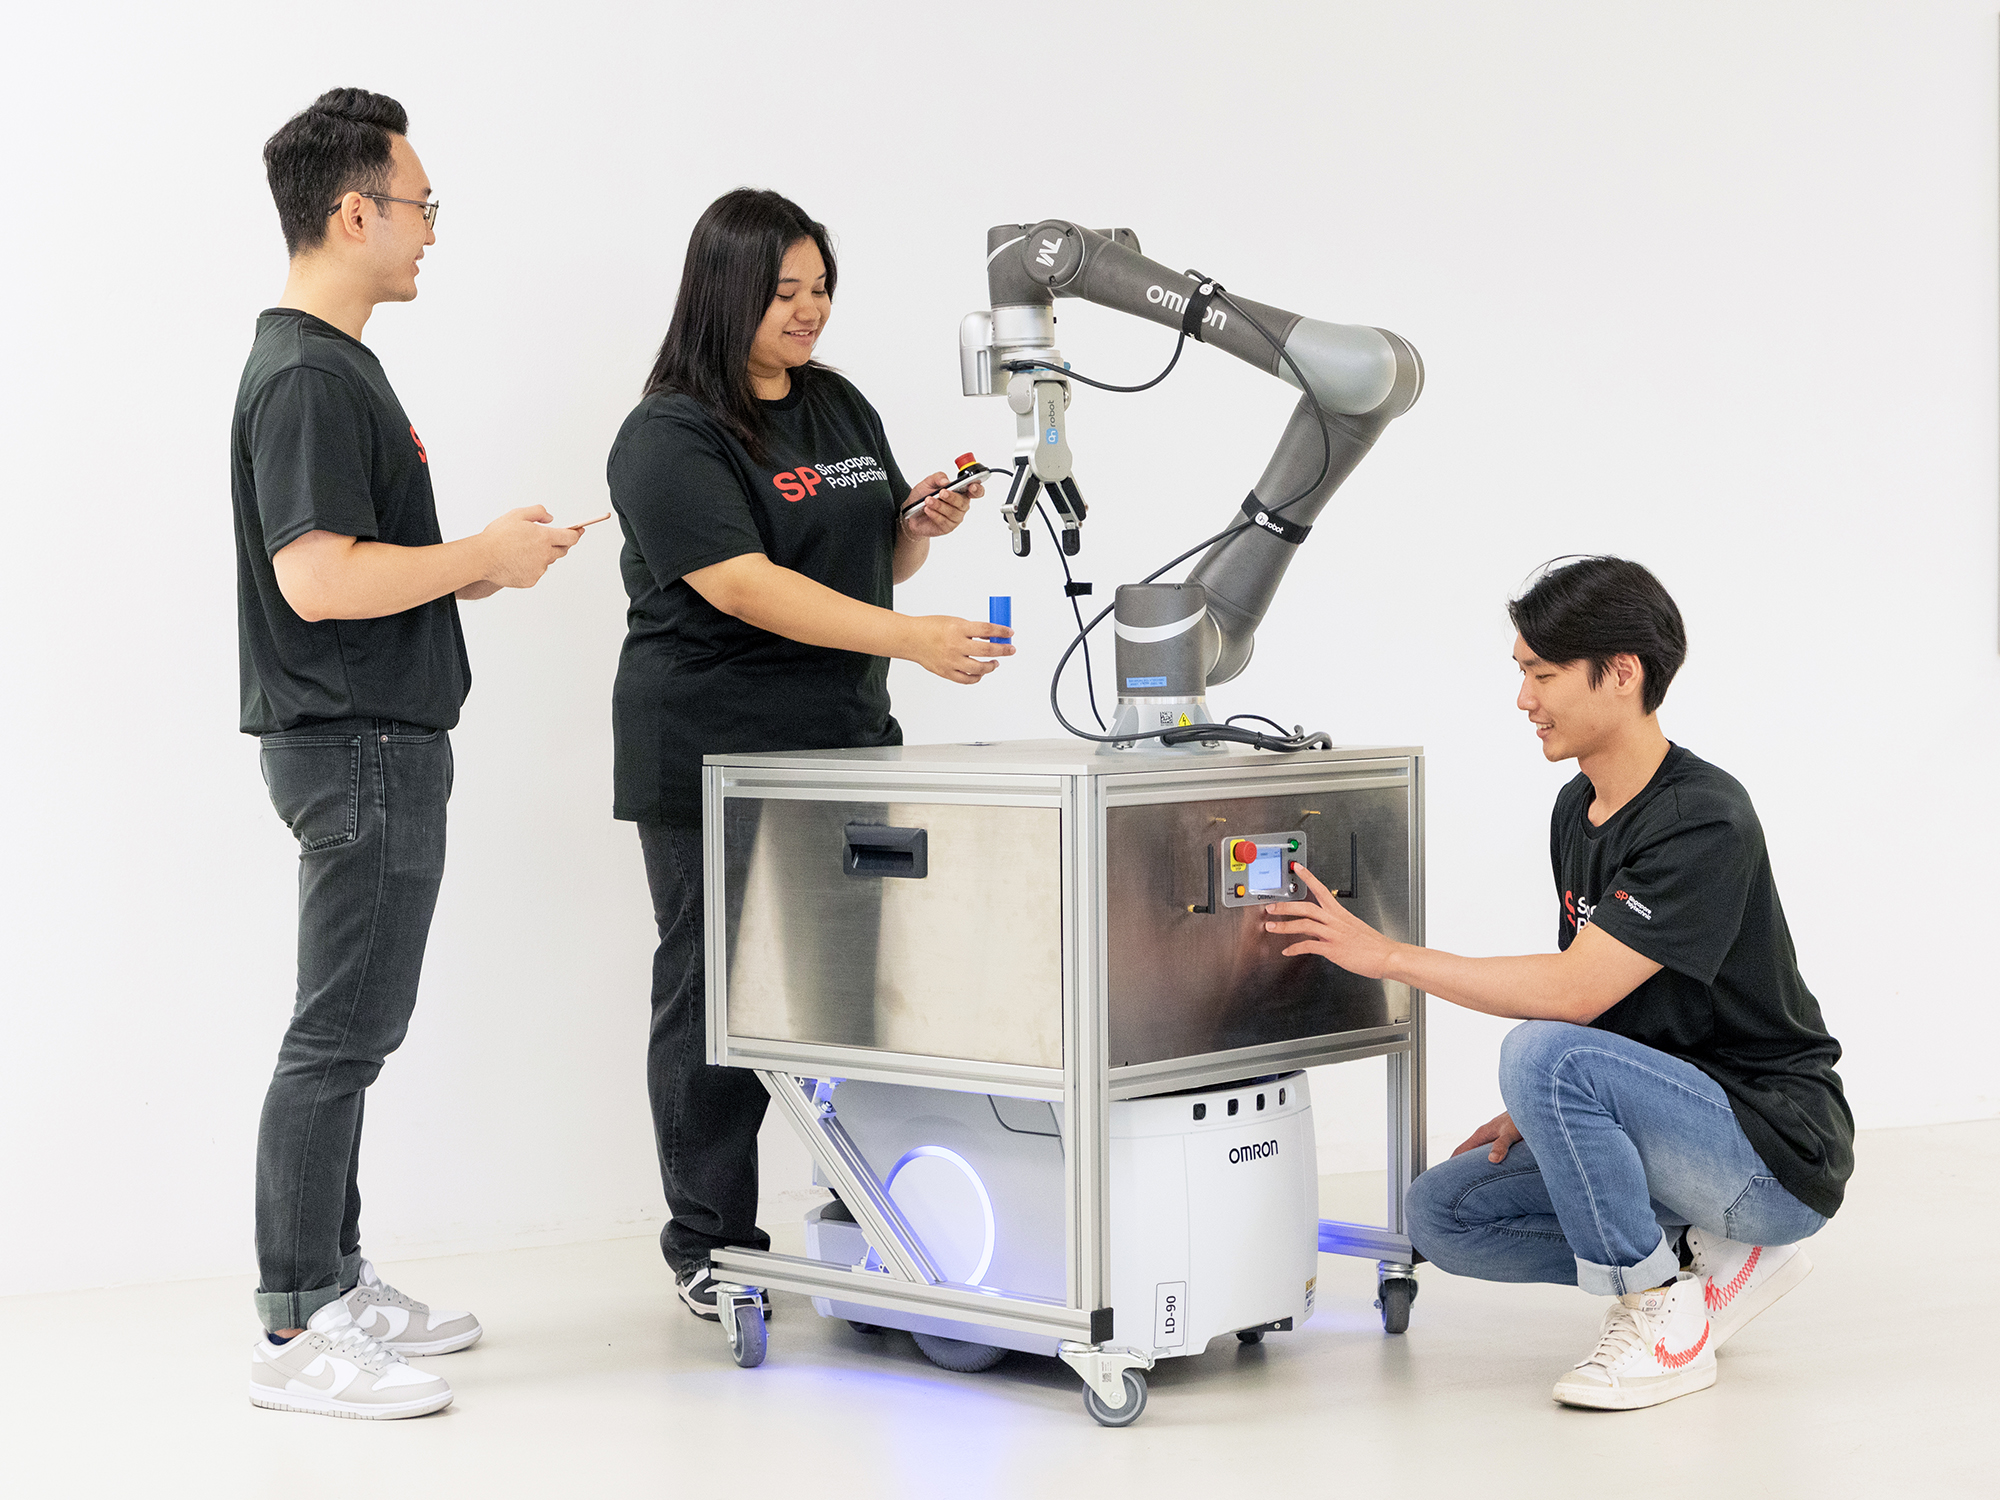 Autonomous Mobile Robot and Collaborative Robot Integration